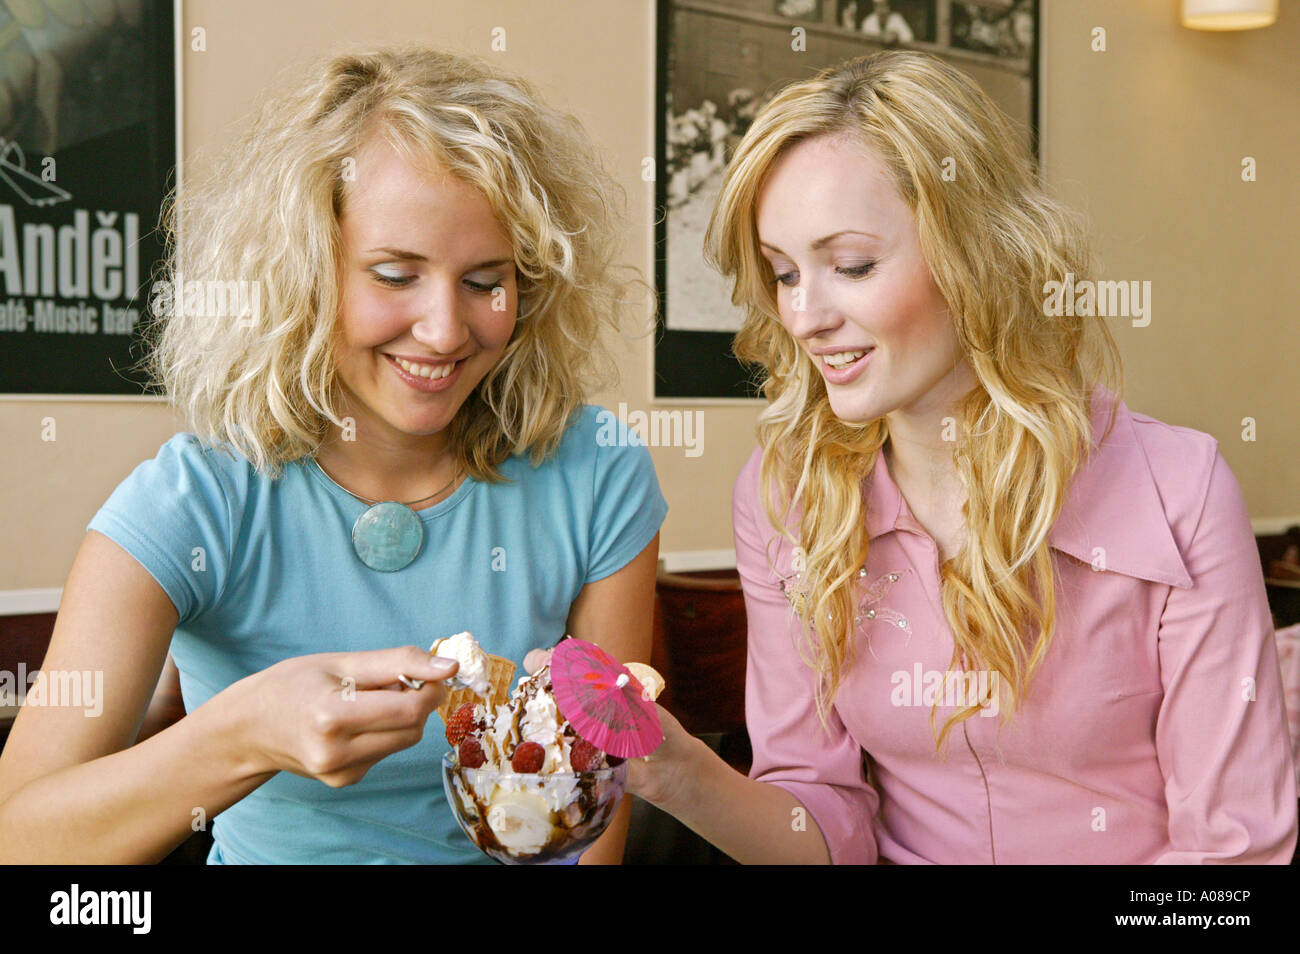 Zwei junge Frauen beim Eisessen in einem Cafe, two young women eating icecream at a cafe Stock Photo